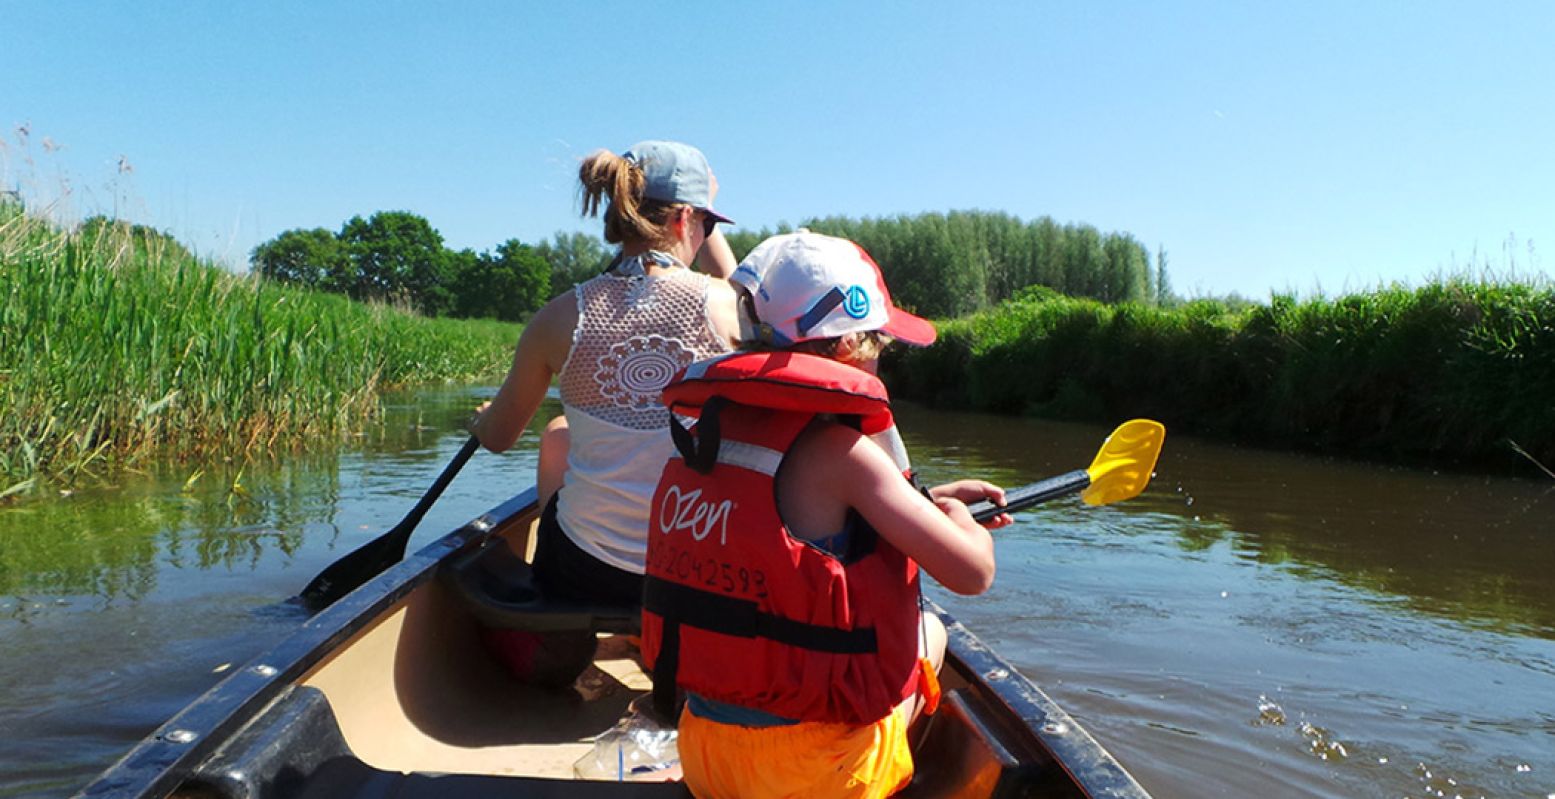 Stap in een kano voor een dag genieten op het water en vaar over de mooie rivier de Dommel met een kano van Rofra. Foto: Rofra